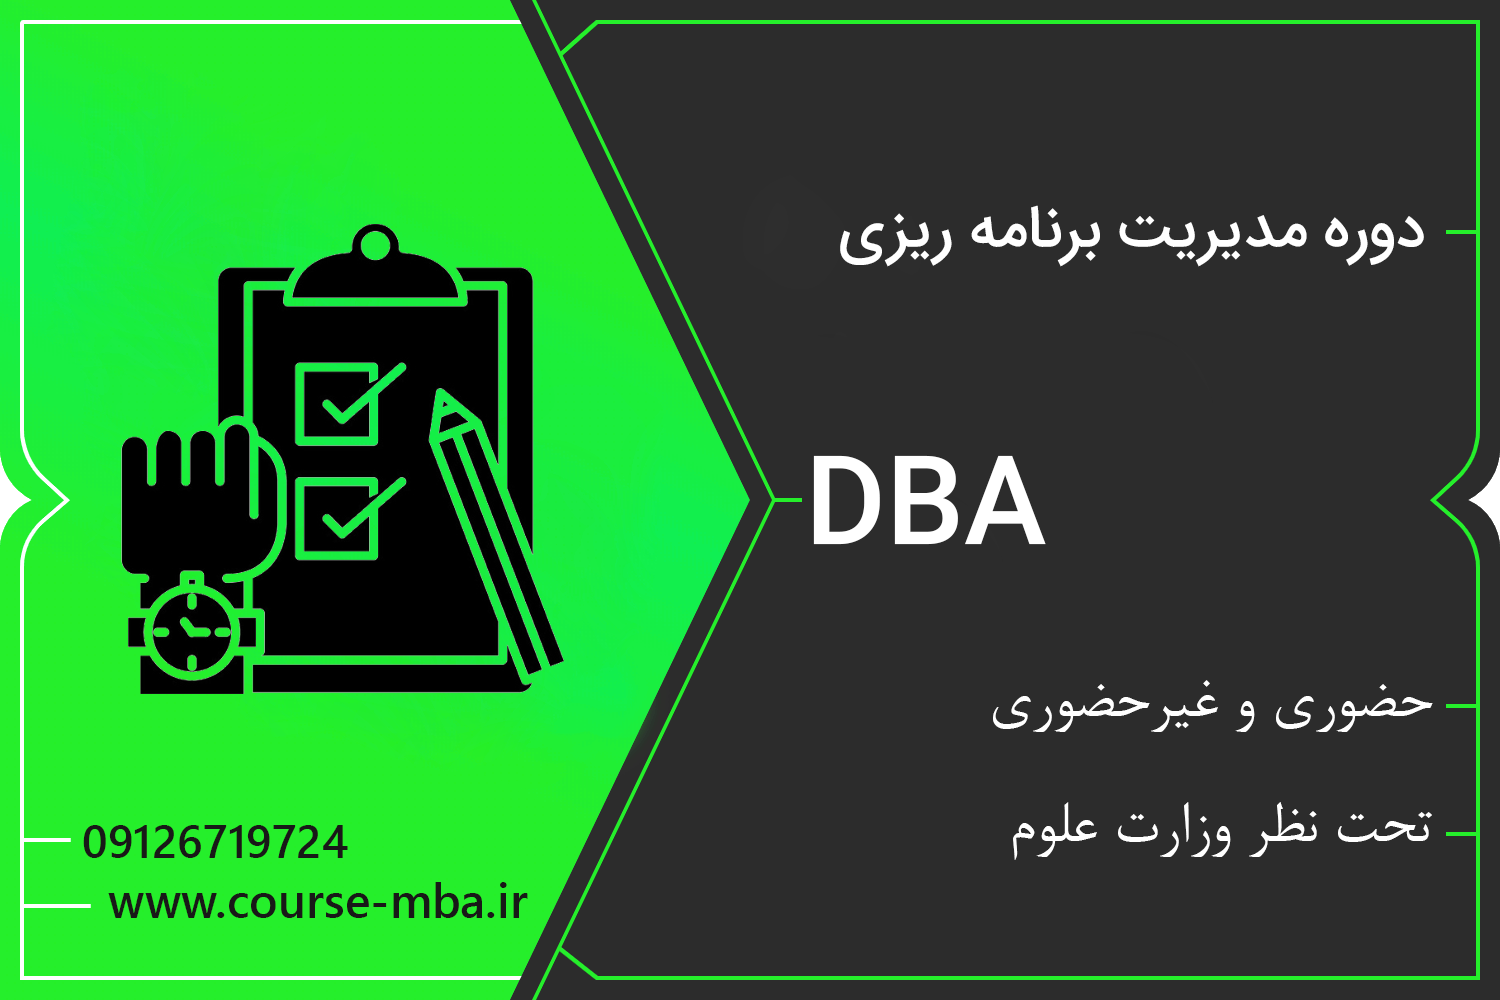 دوره DBA مدیریت برنامه ریزی | مدرک DBA مدیریت برنامه ریزی